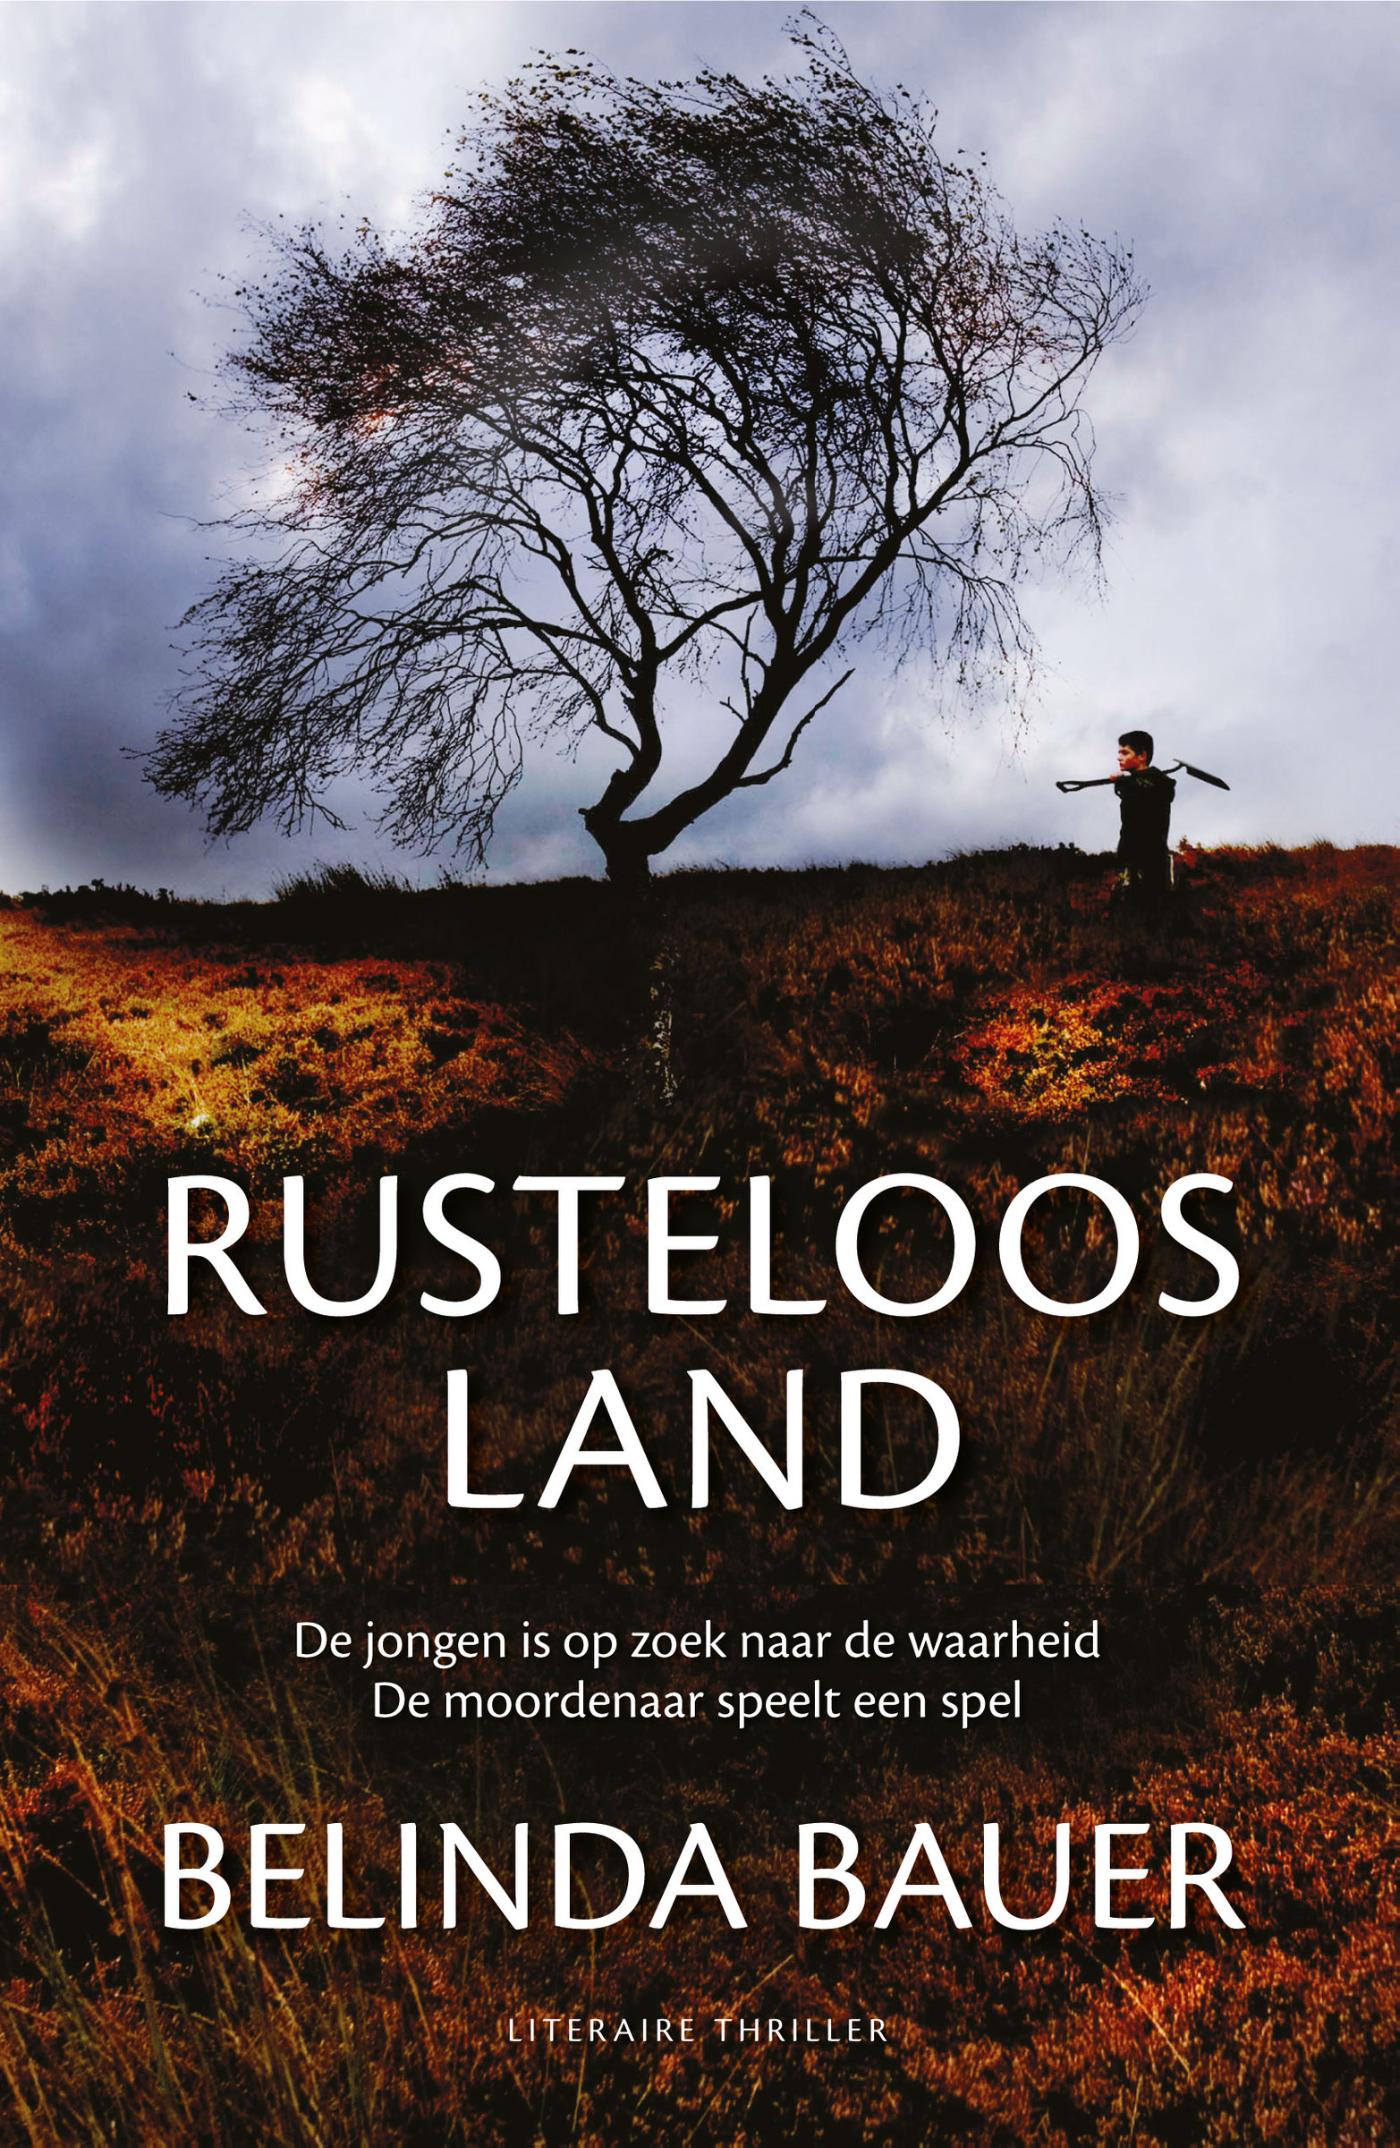 Rusteloos land (Ebook)